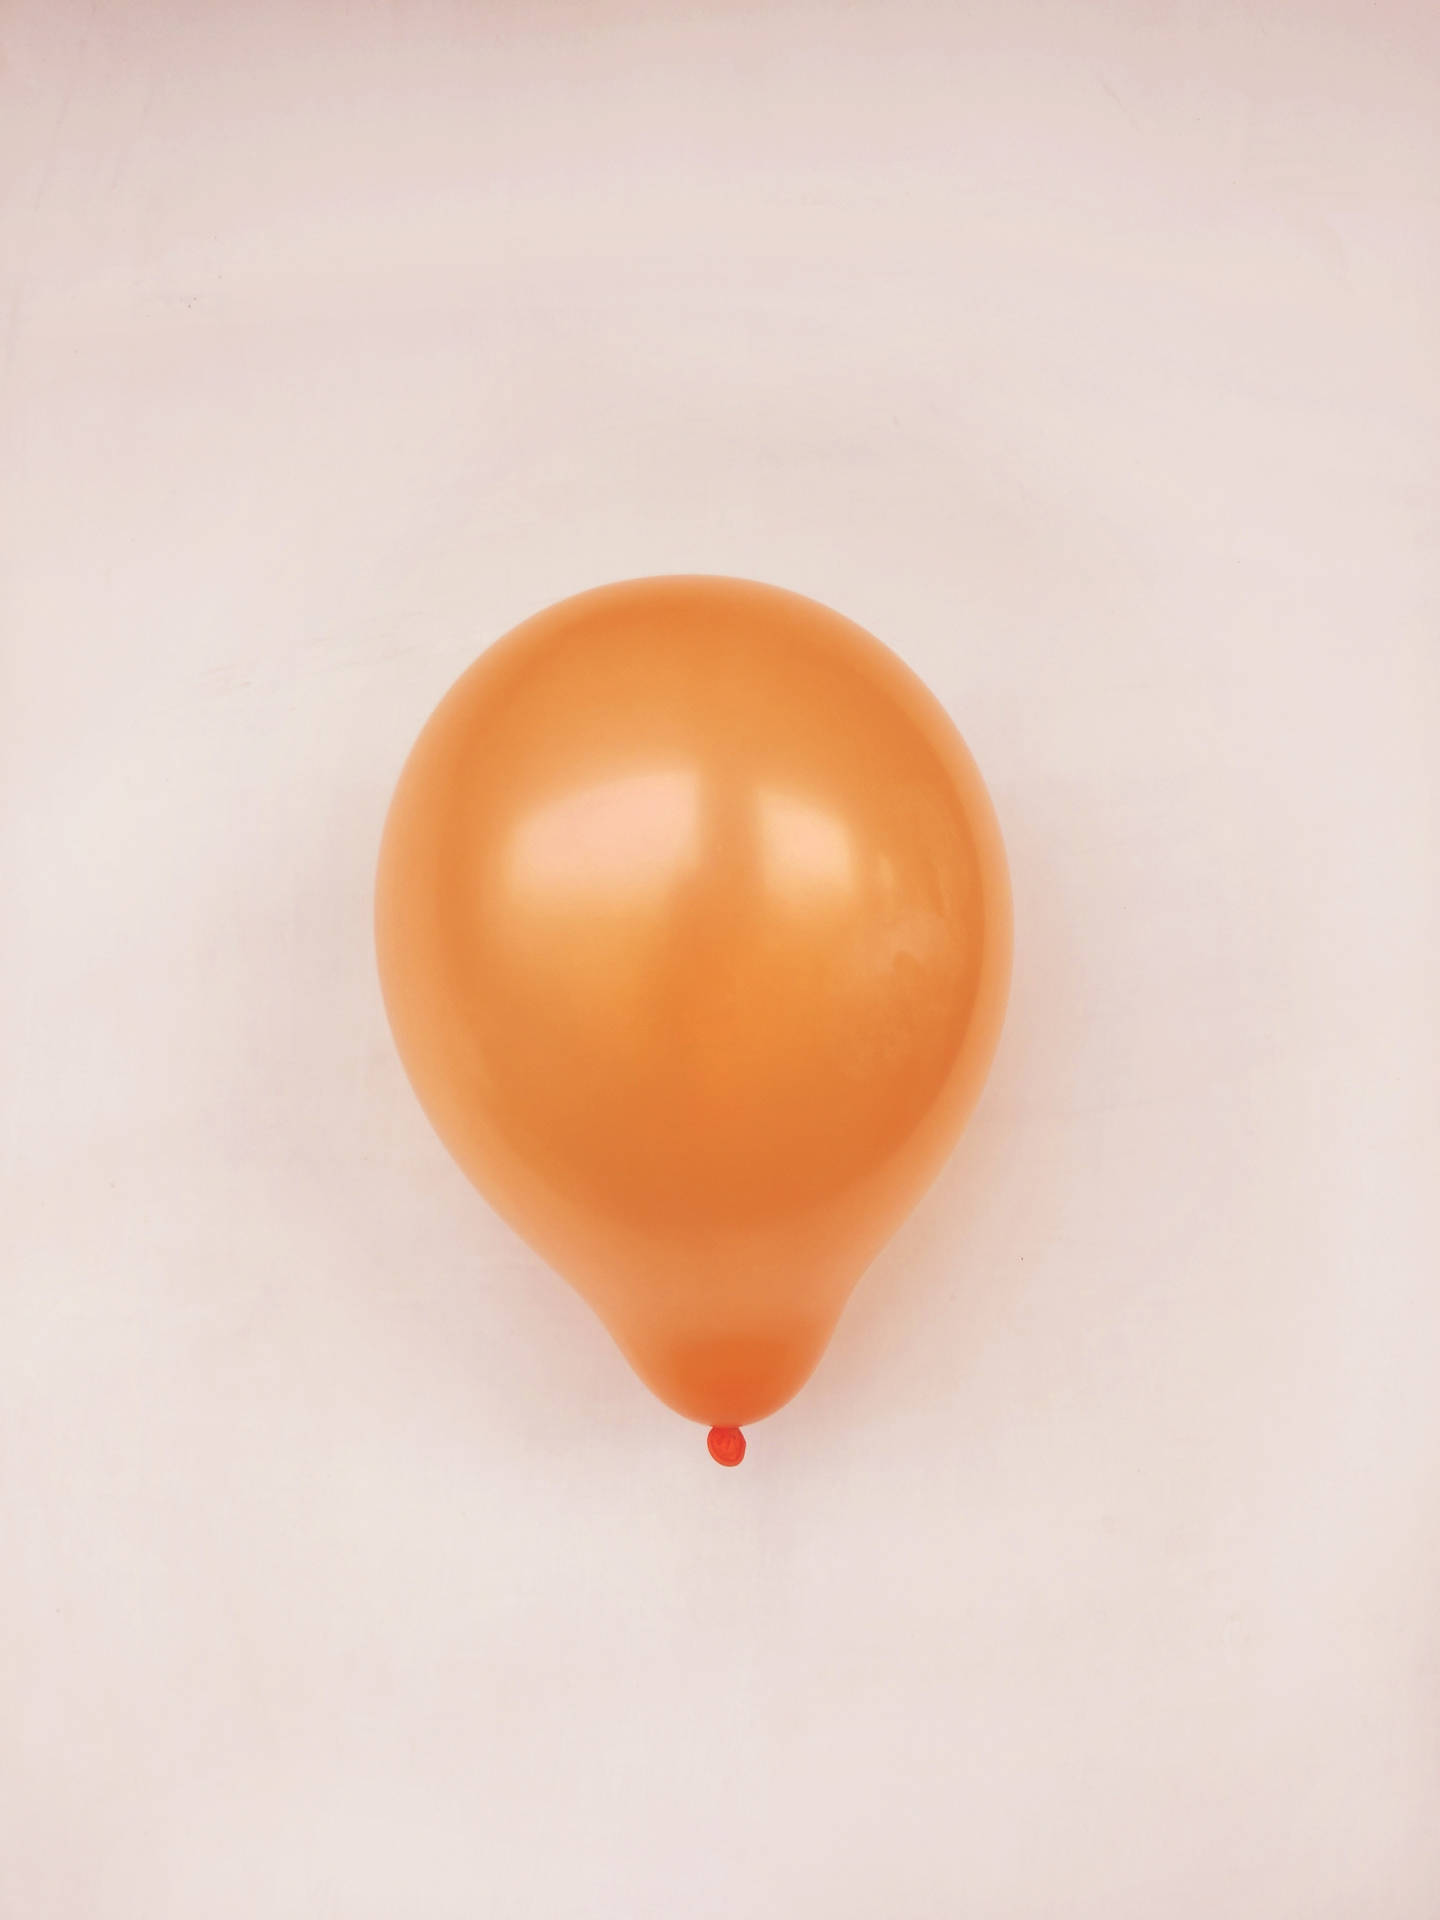 Orange Balloon In Beige Background Wallpaper